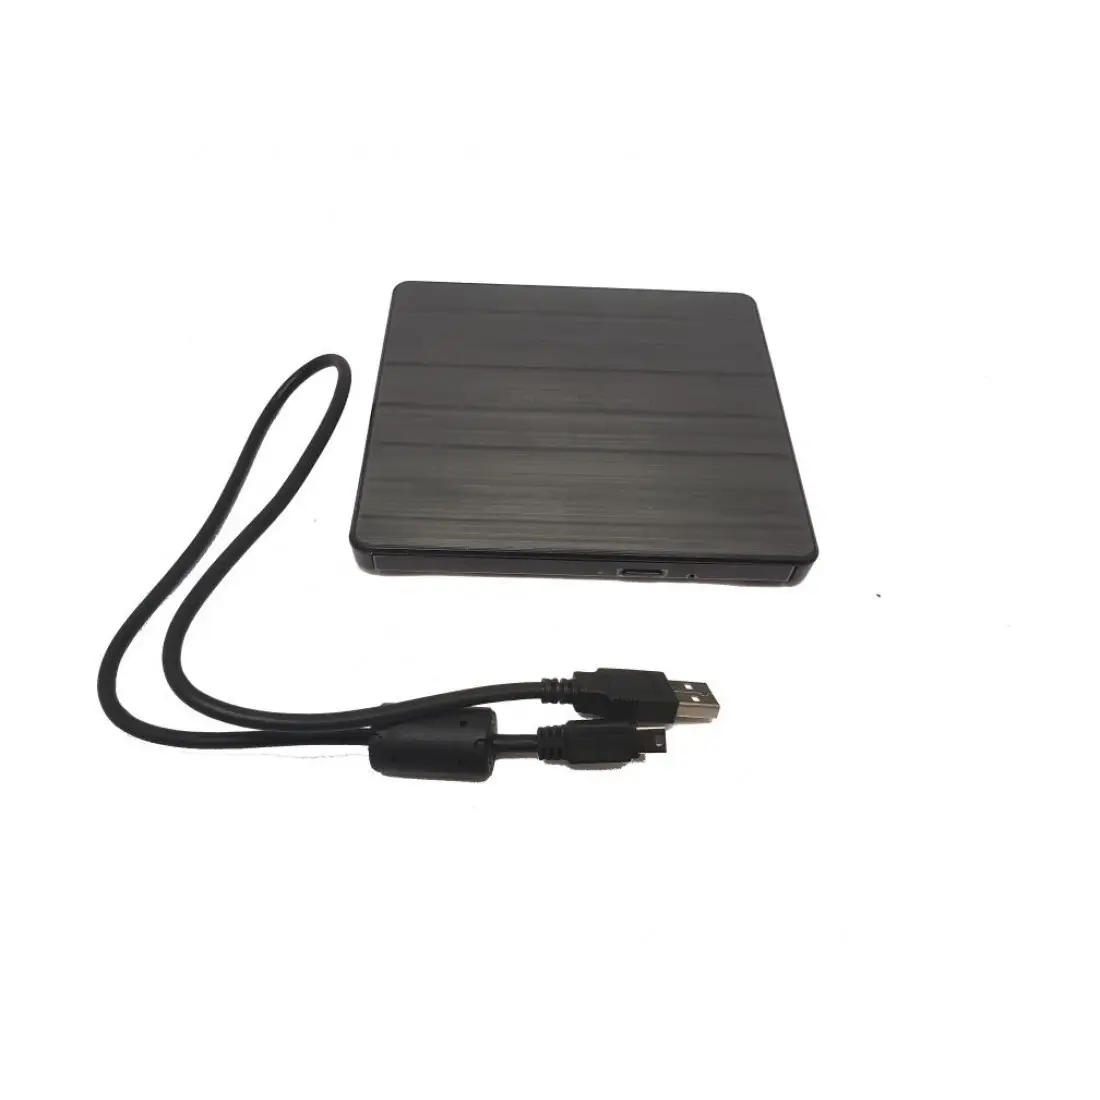 01LU635 EUA5 автономный USB DVD-привод с кабелем